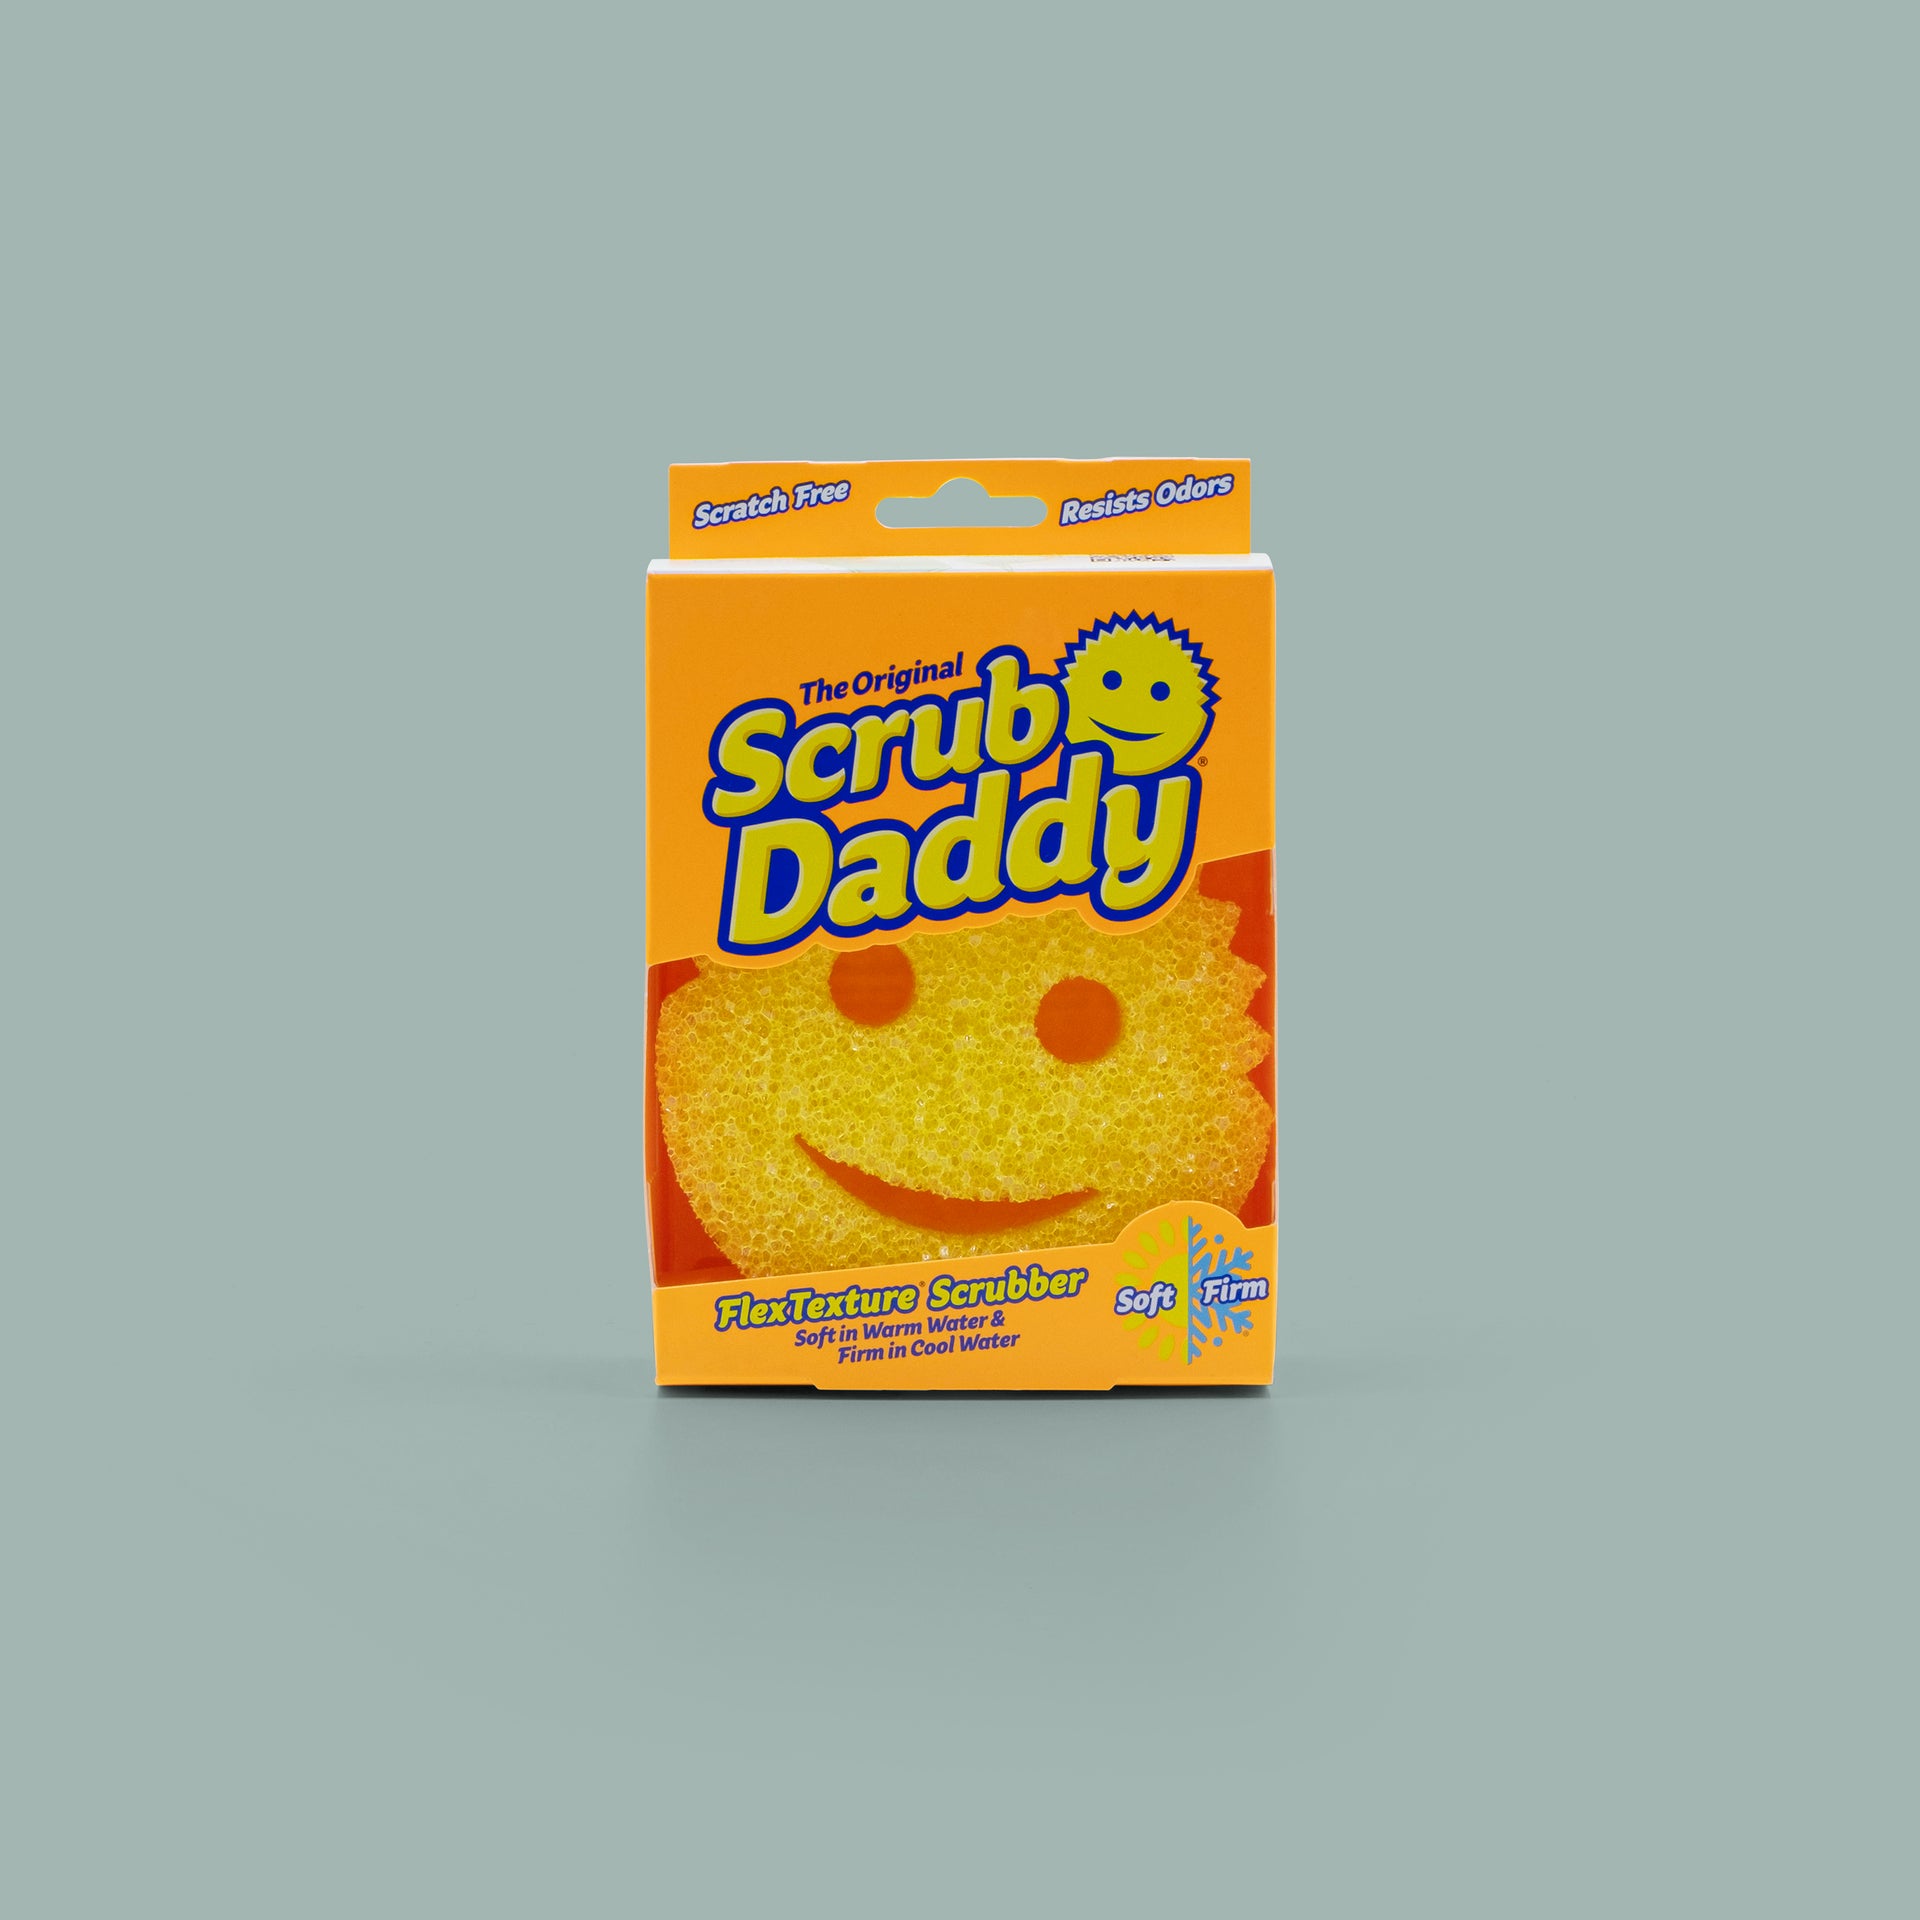  Original Scrub Daddy Sponge - Scratch Free Scrubber